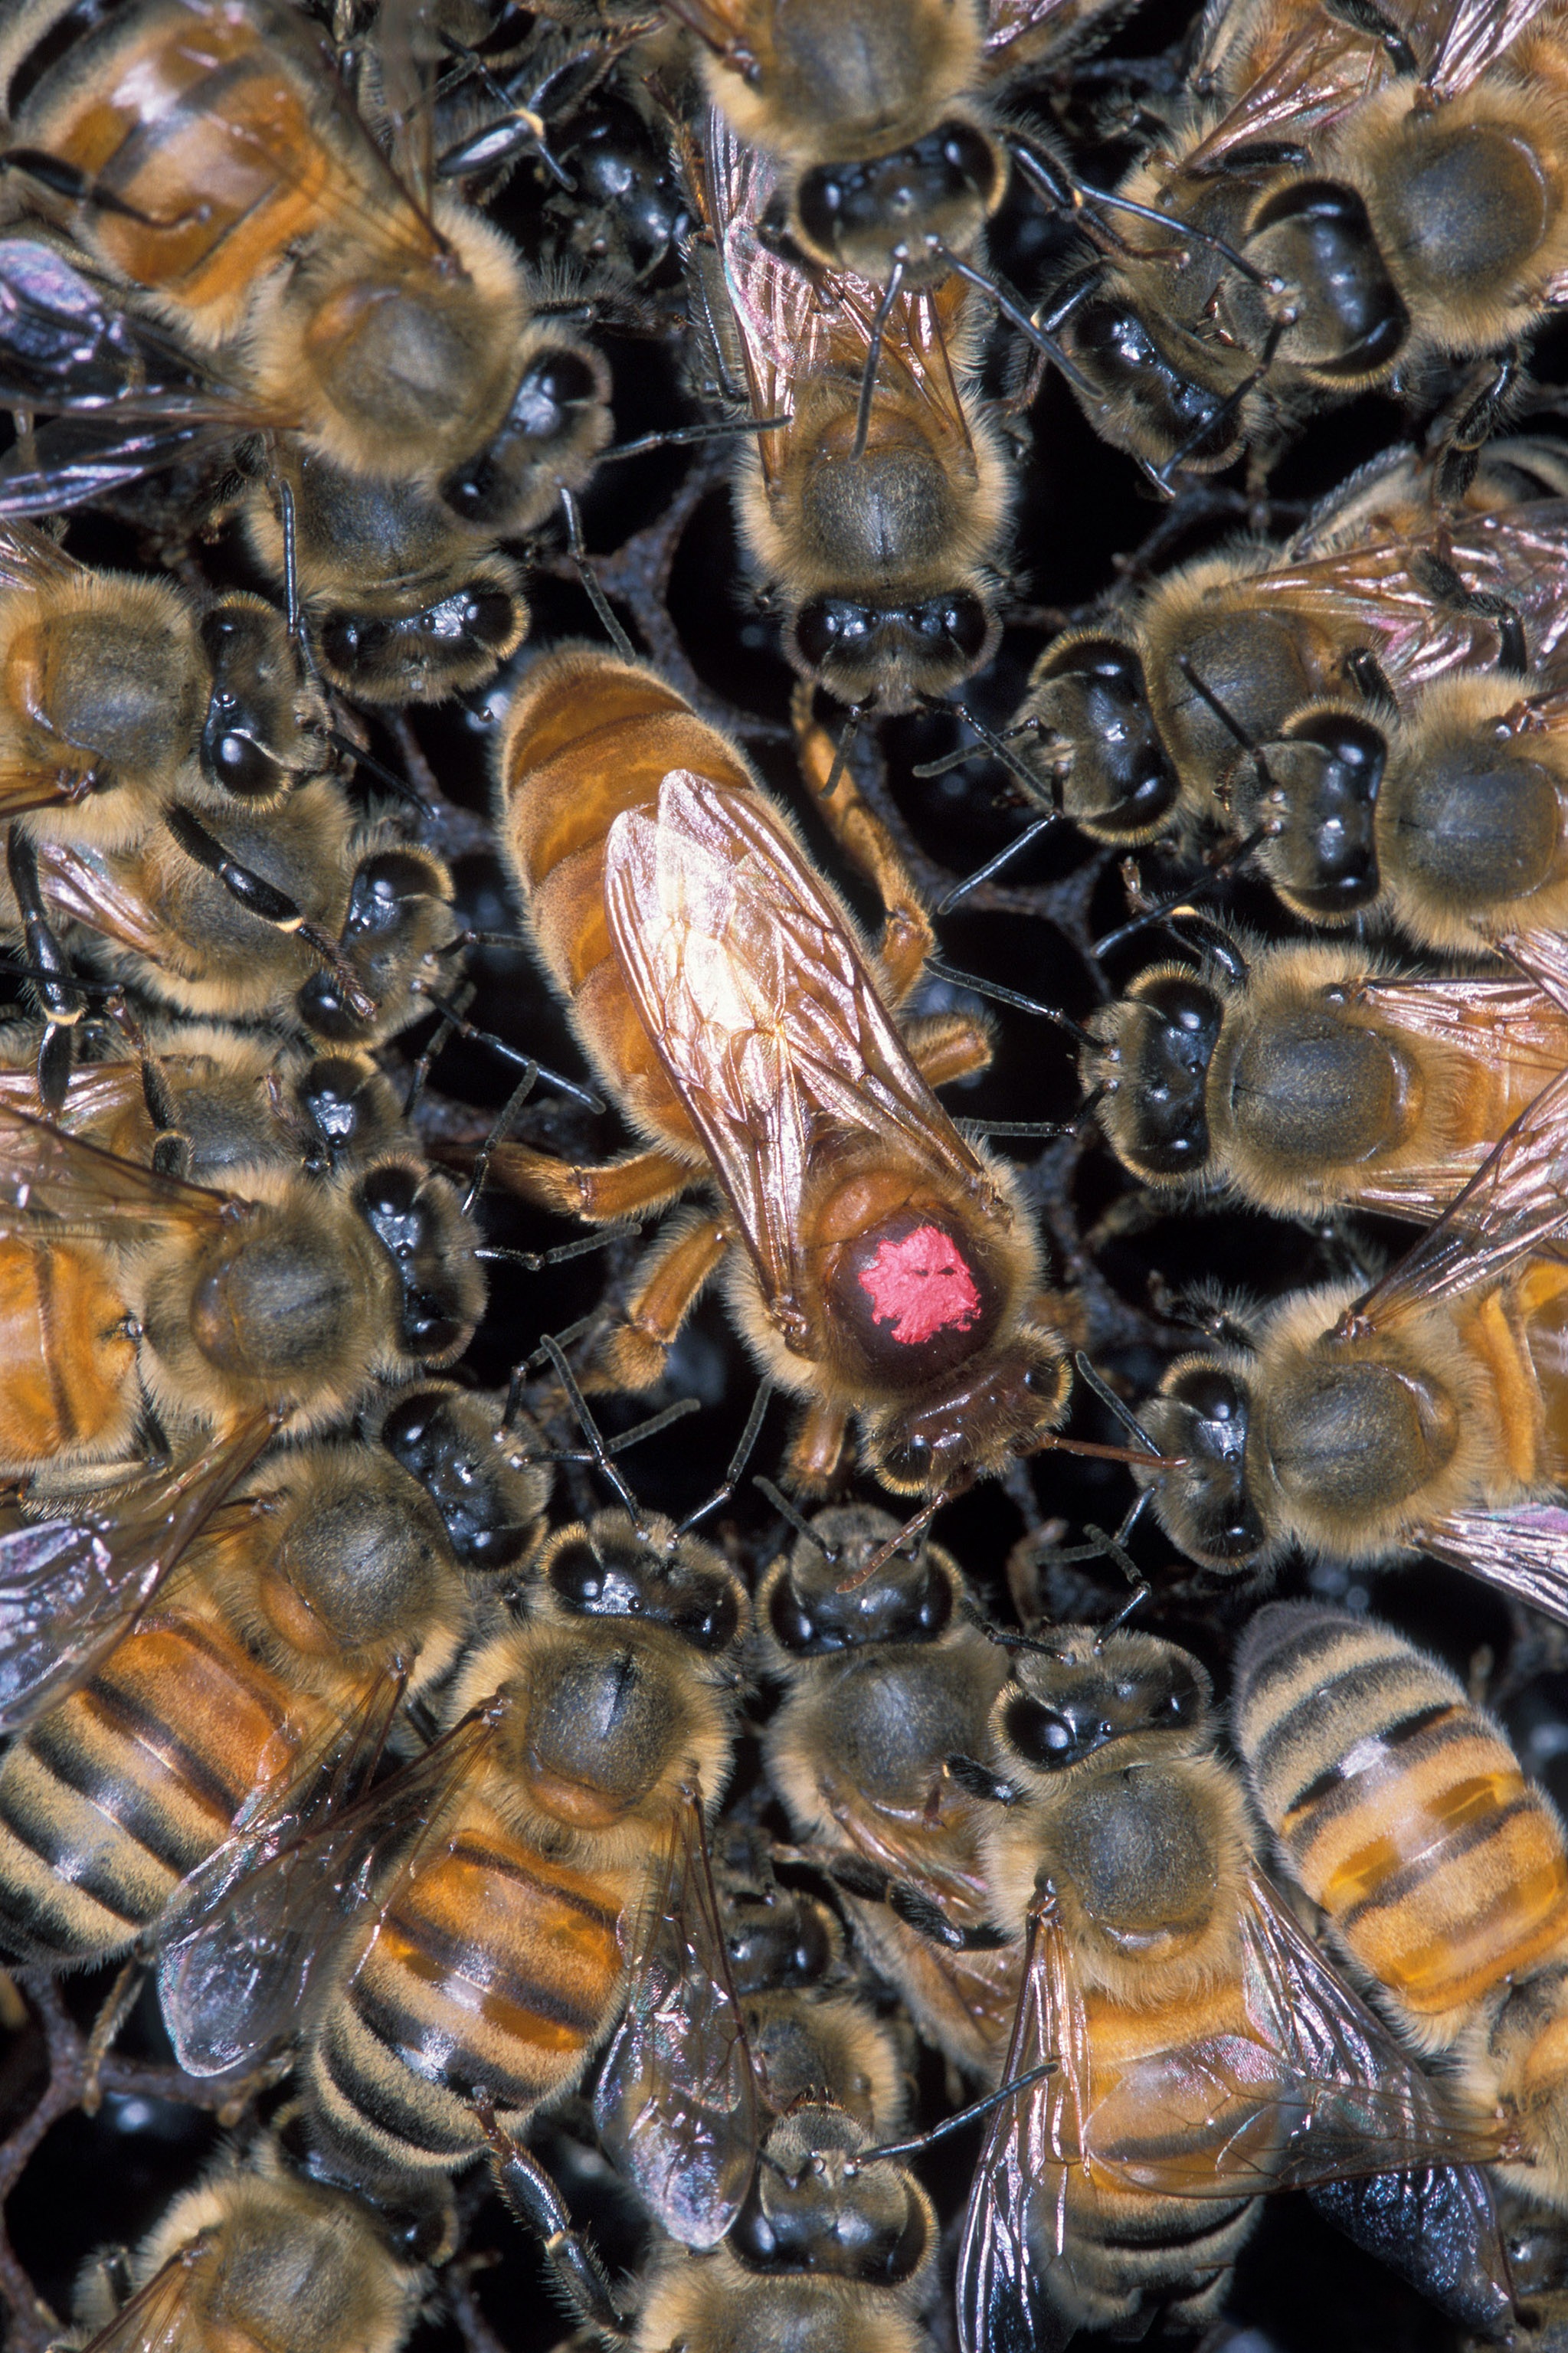 African honeybee photo